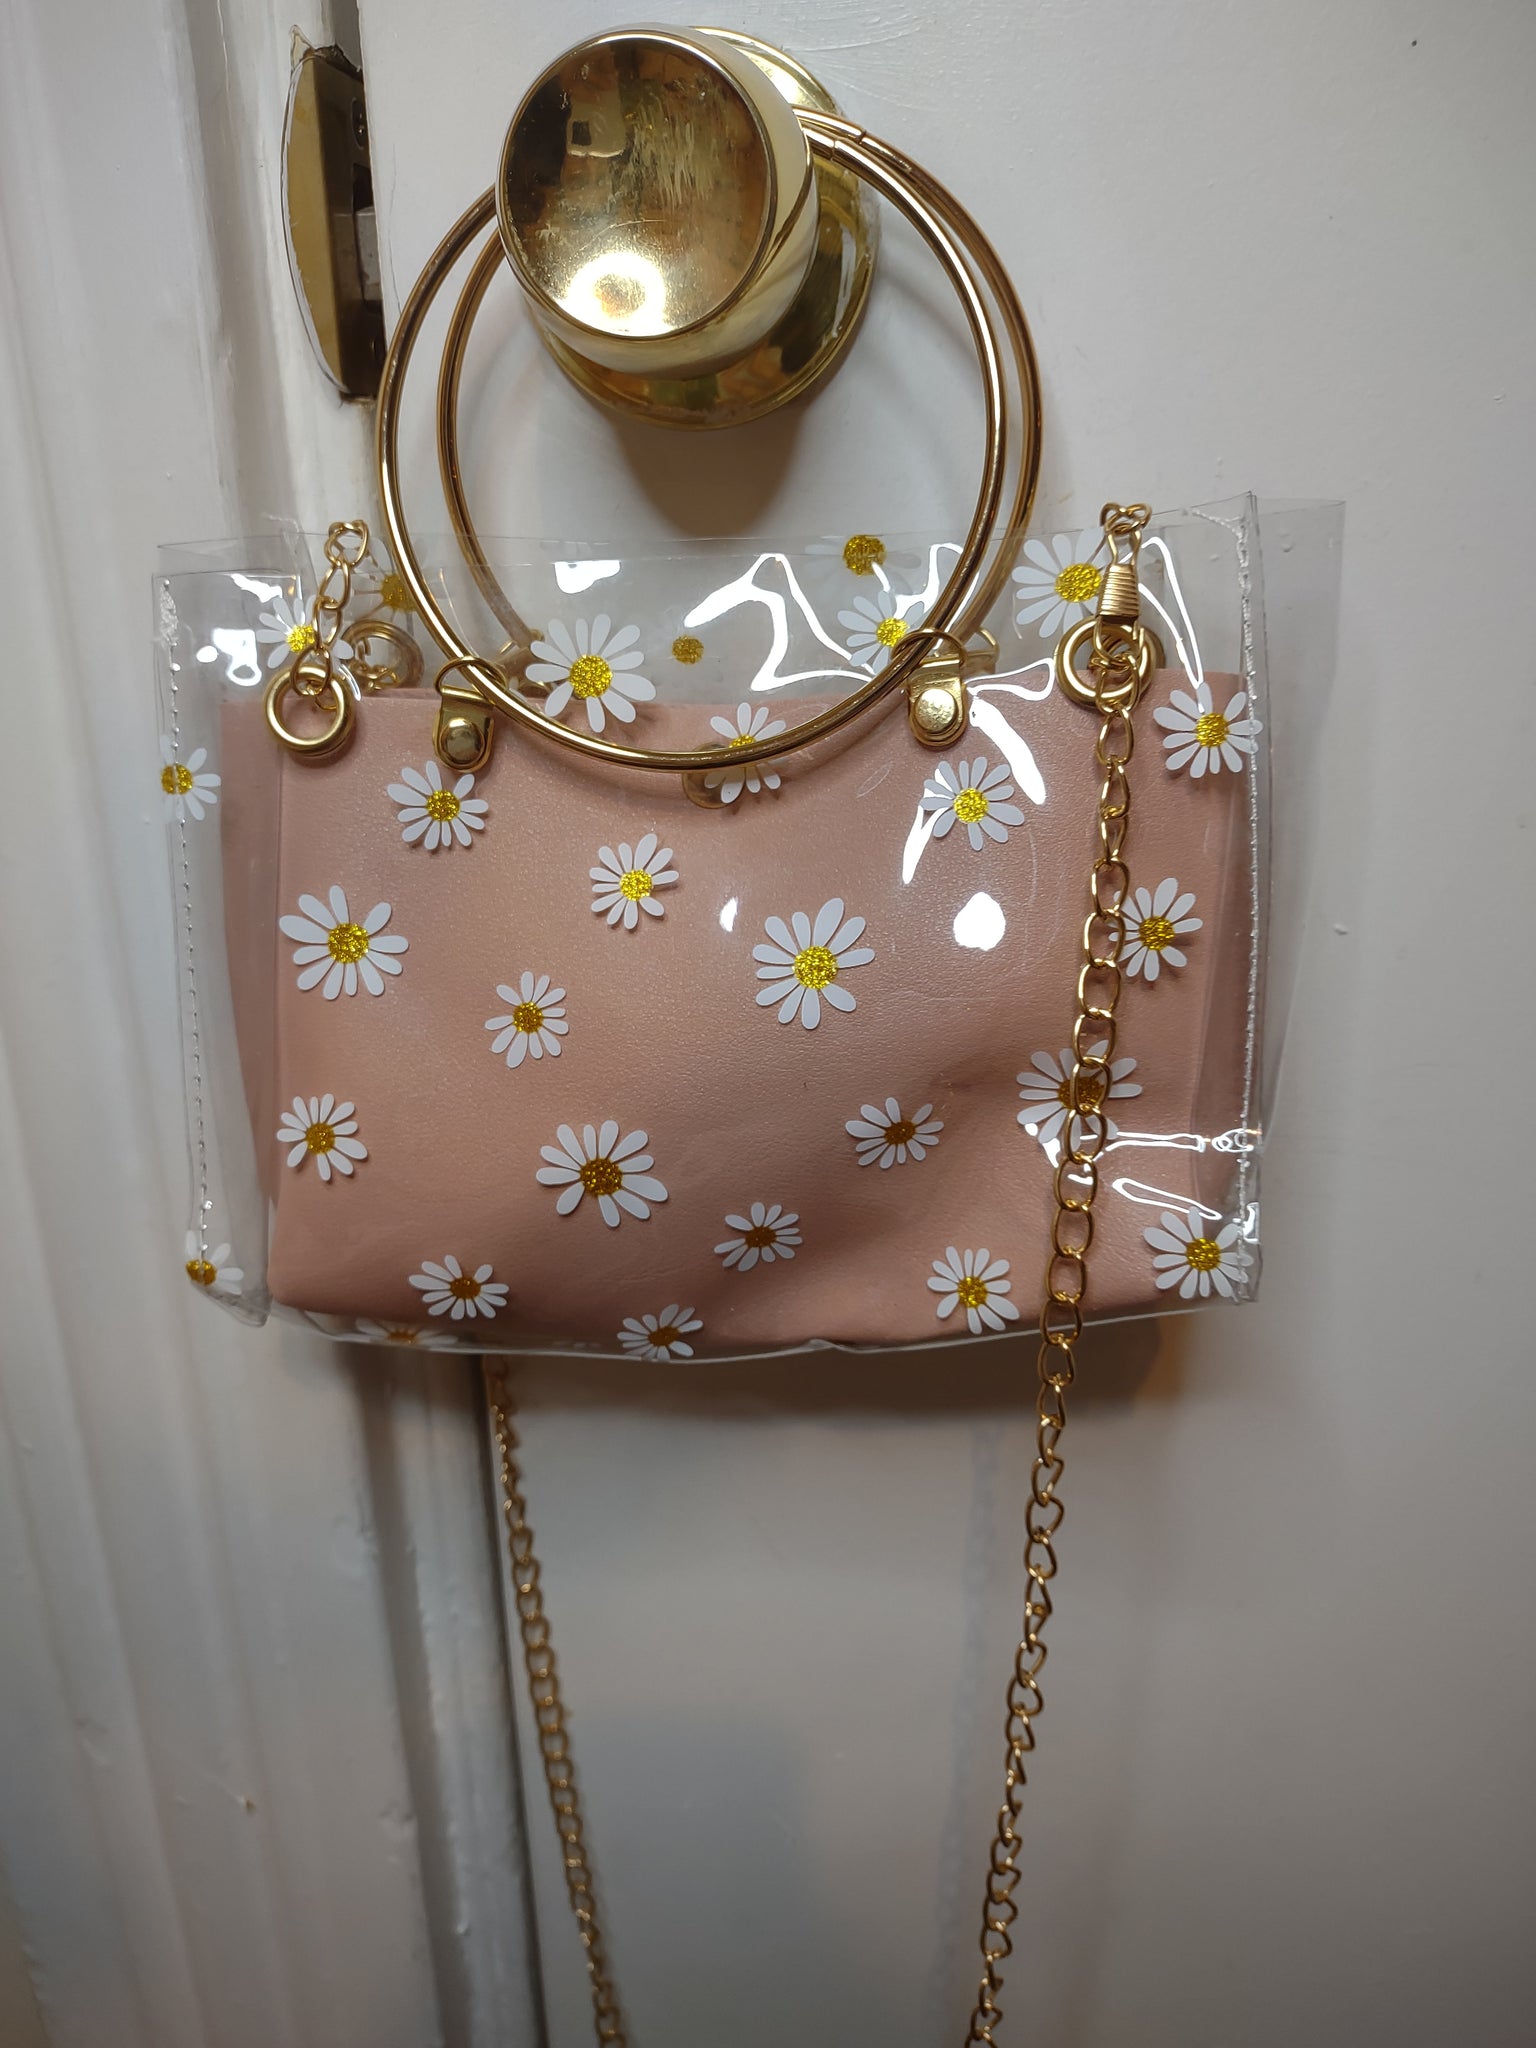 Daisy purse